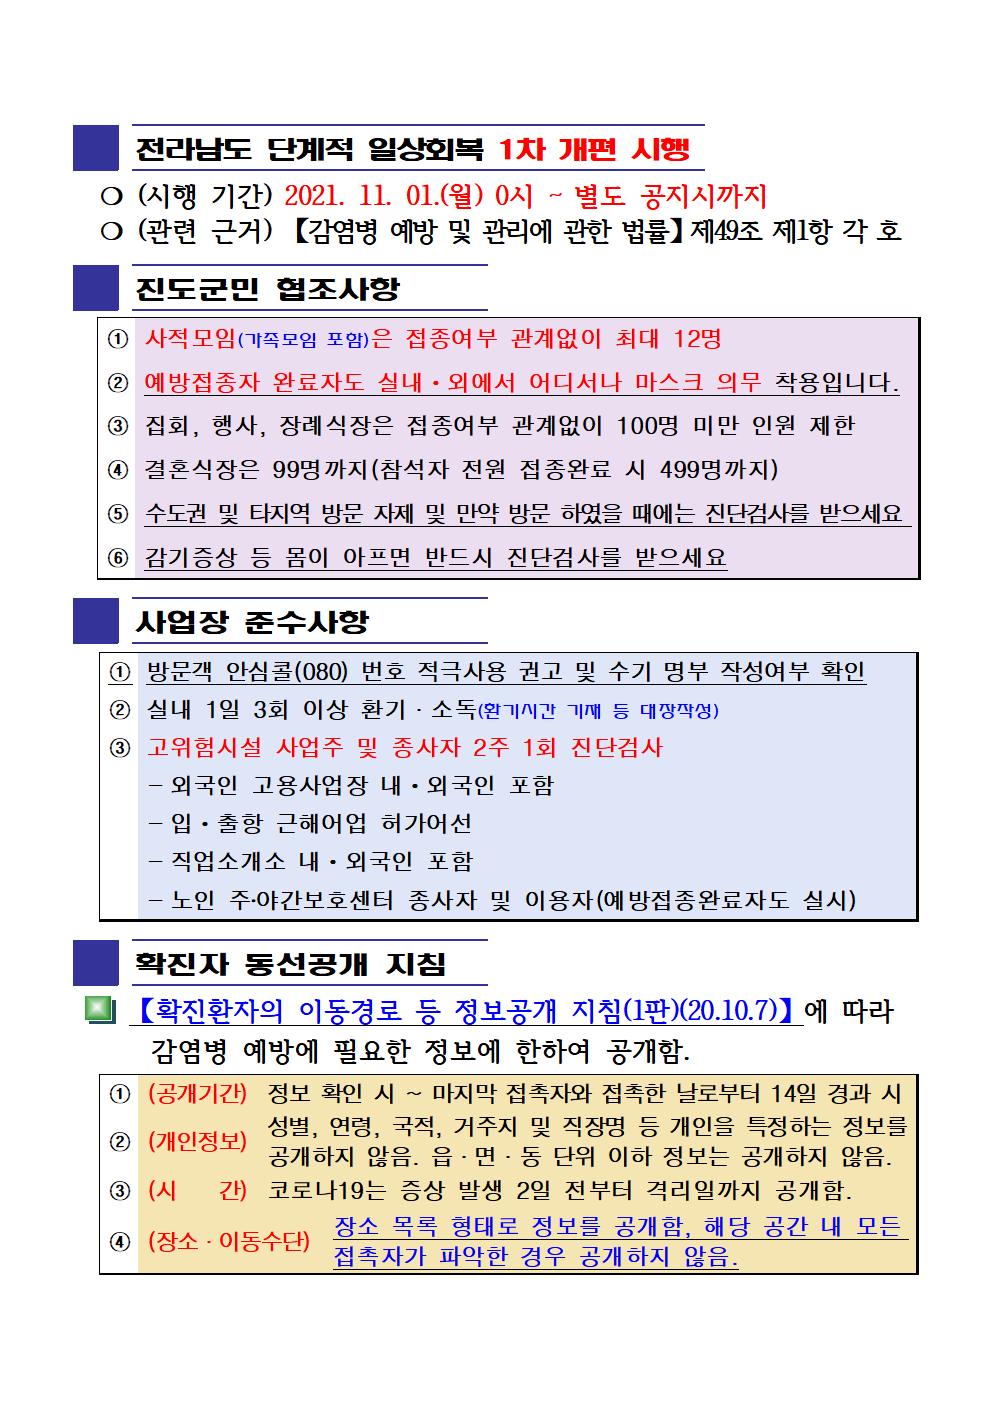 2021년 코로나 19 대응 일일상황보고(11월 29일 24시 기준) 첨부#2